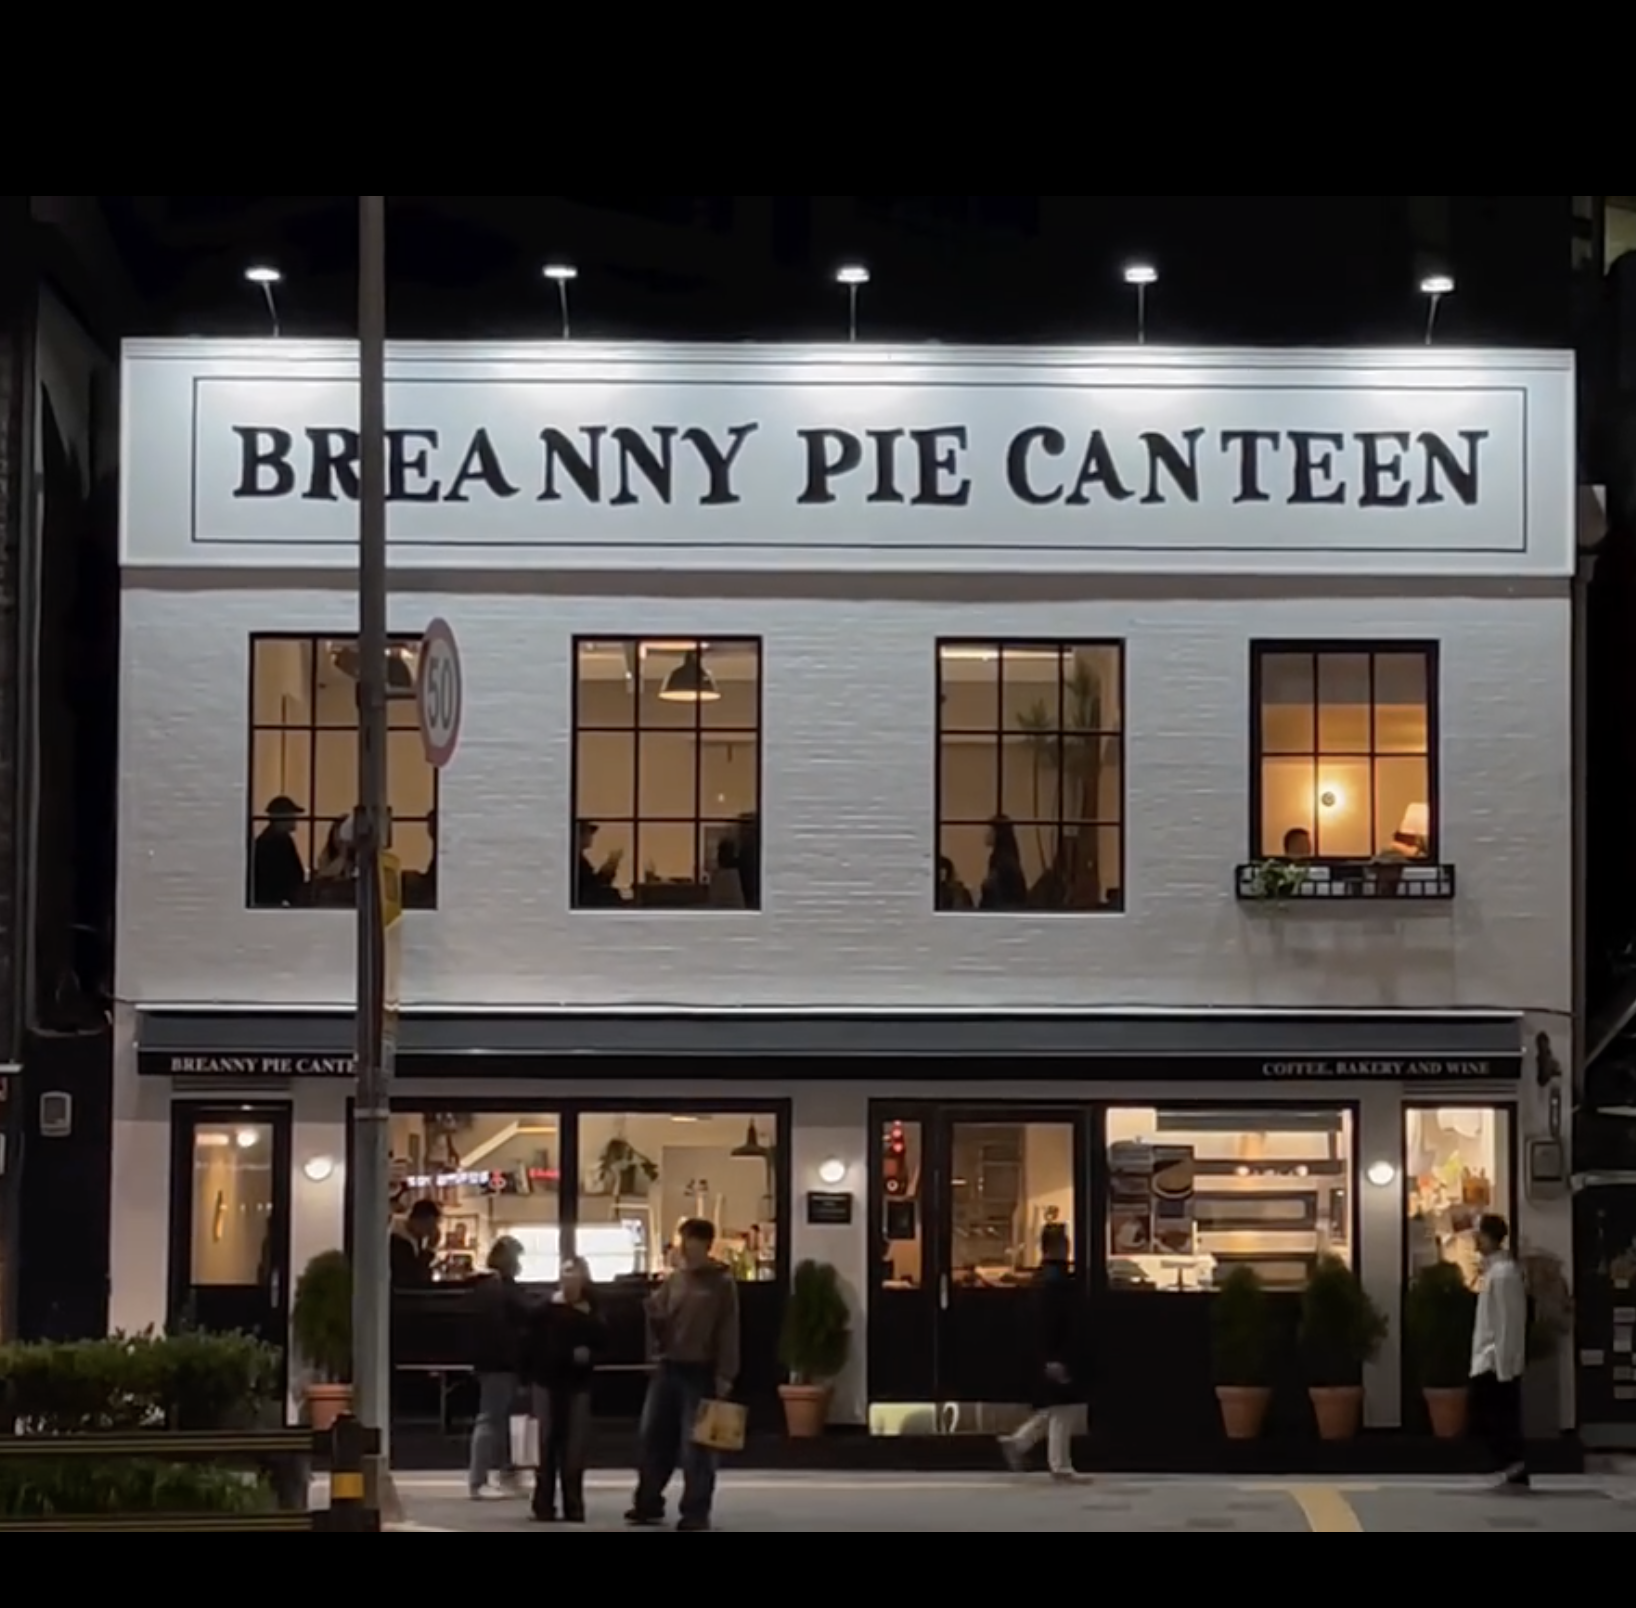 Breanny Pie Canteen (브레니파이칸틴)：ソウルの中心で味わうヨーロッパ風ミートパイとデザートパイ